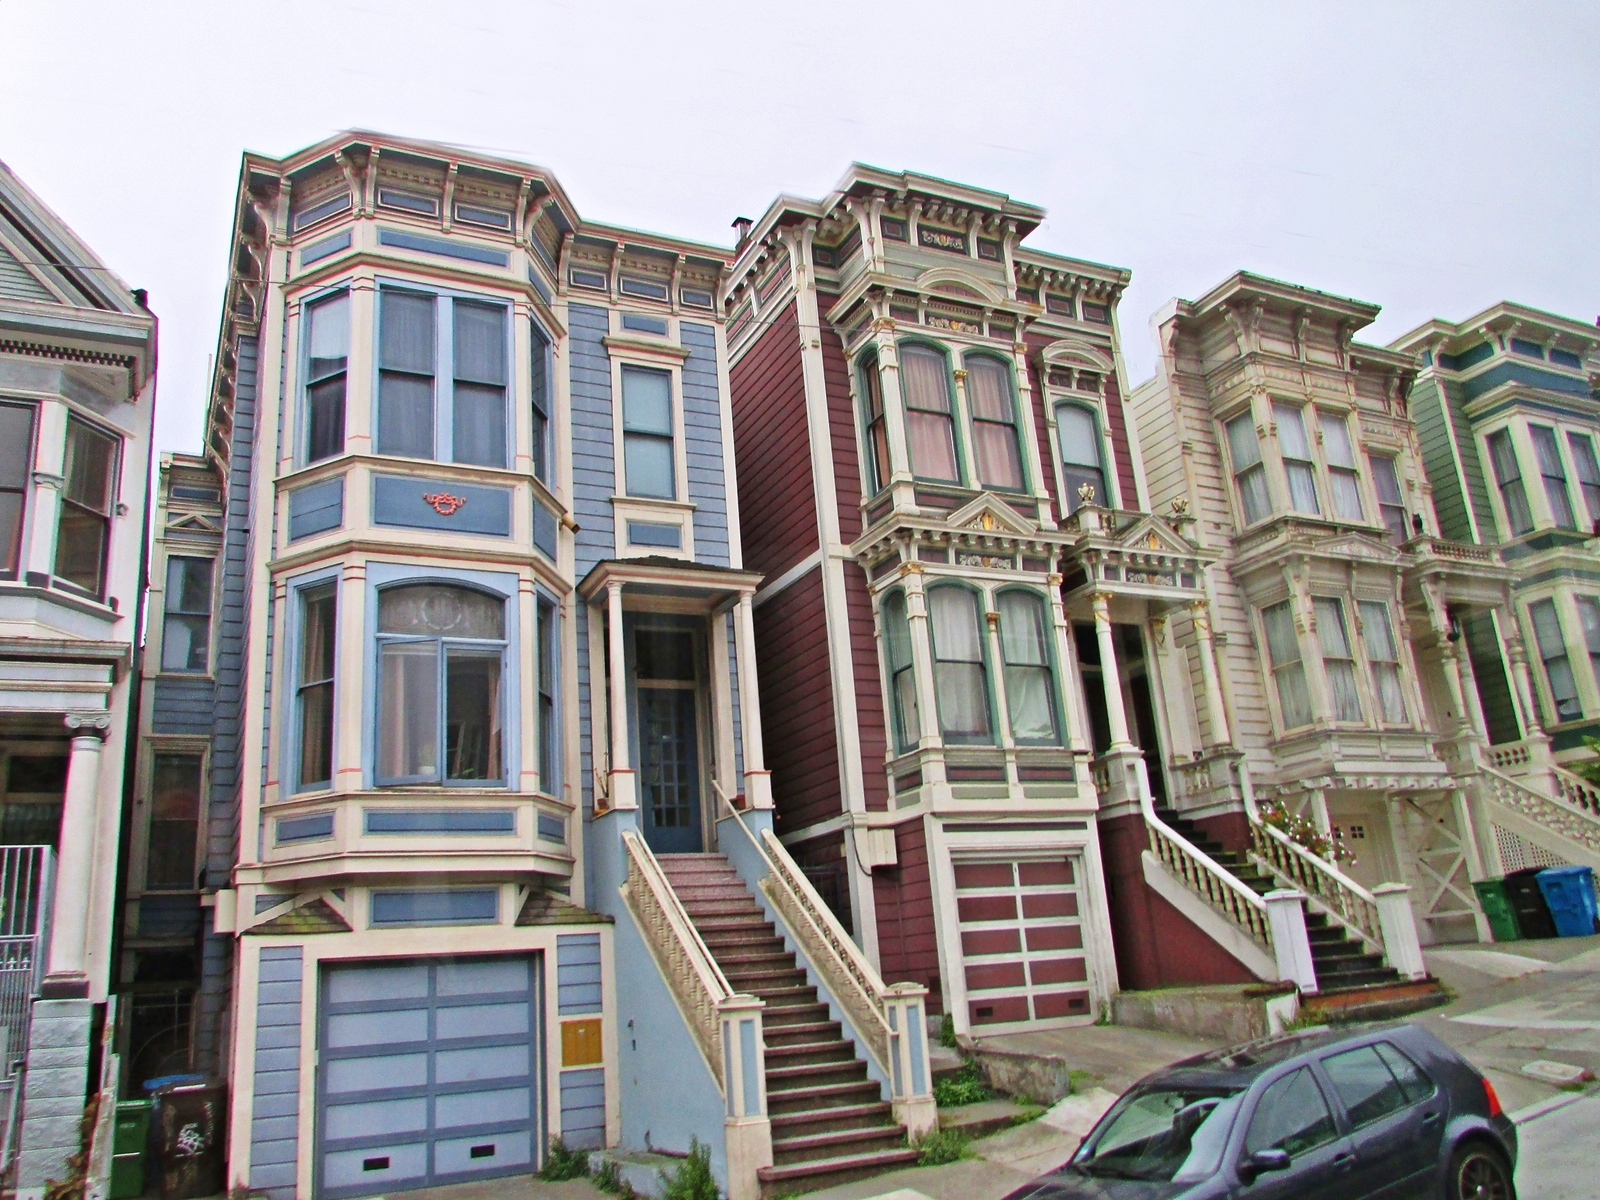 San Francisco - Viktorianische Häuser in der Lombard Street - USA Rundreise - Roadtrip - Reisebericht - Travel Diary - Fashionladyloves